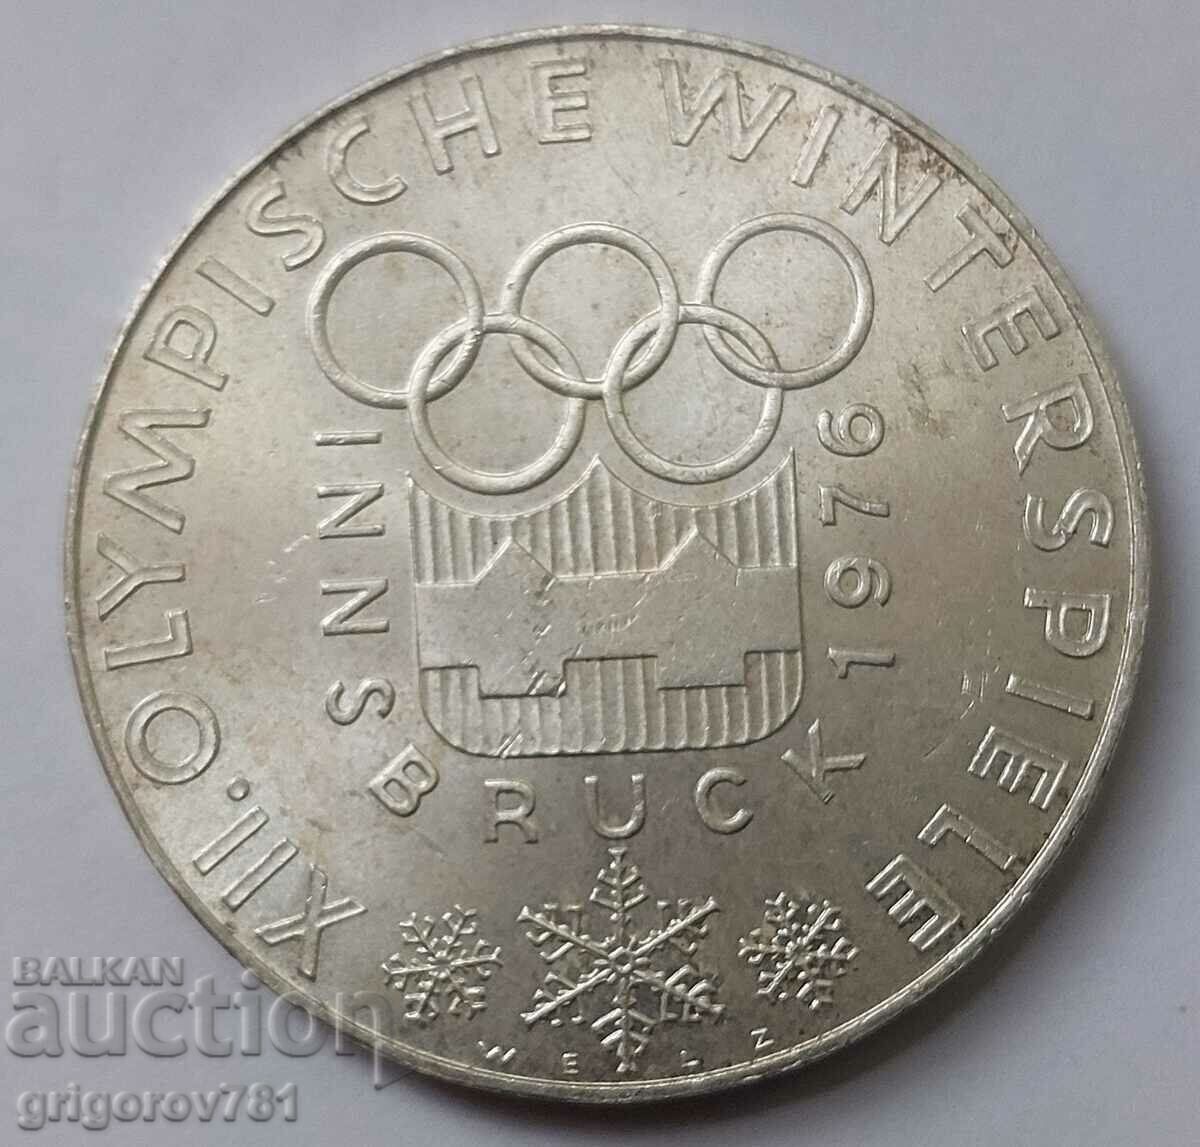 100 Shilling Silver Αυστρία 1976 - Ασημένιο νόμισμα #20